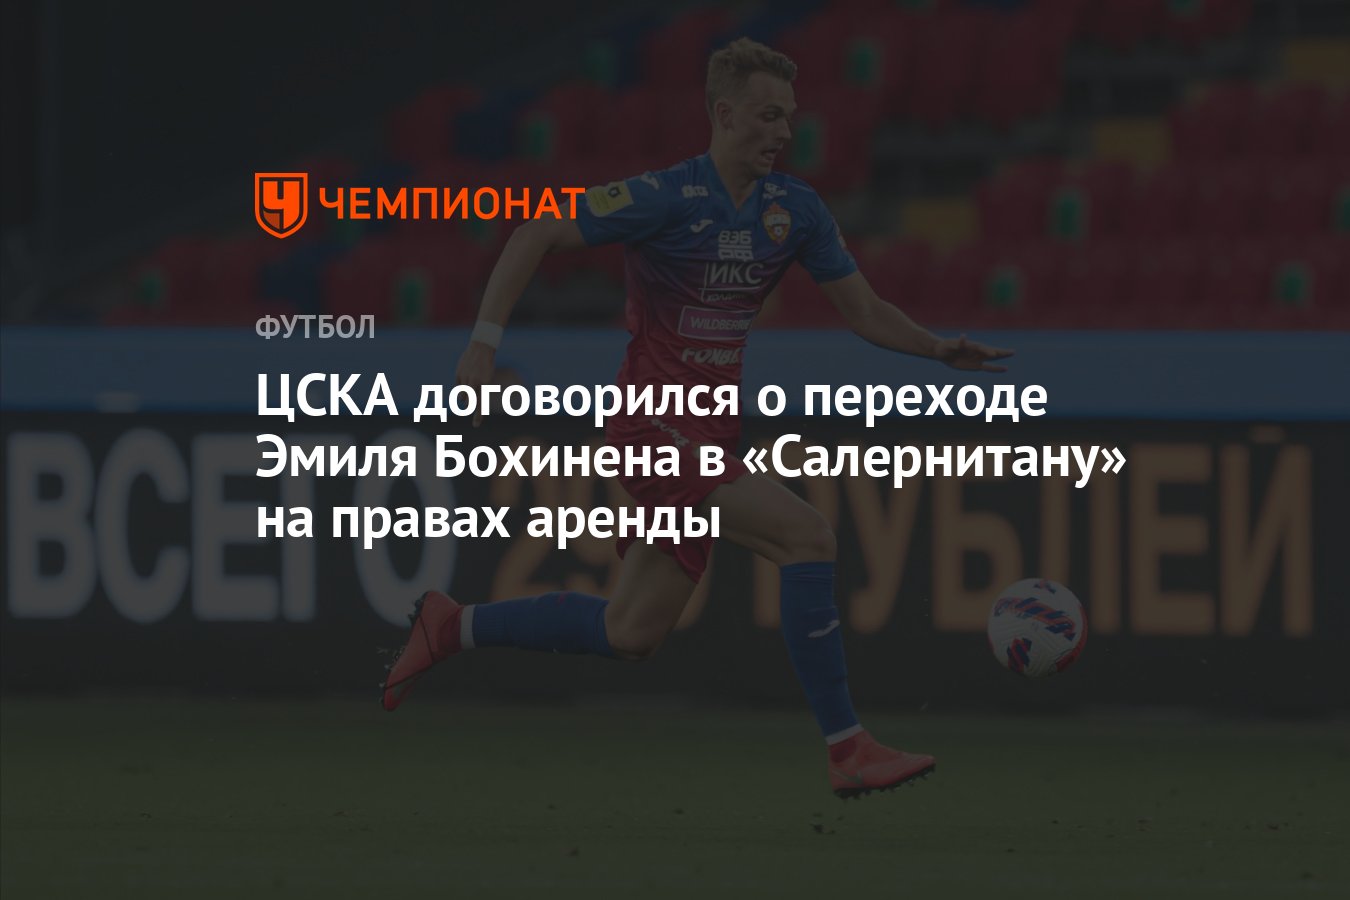 ЦСКА договорился о переходе Эмиля Бохинена в «Салернитану» на правах аренды thumbnail